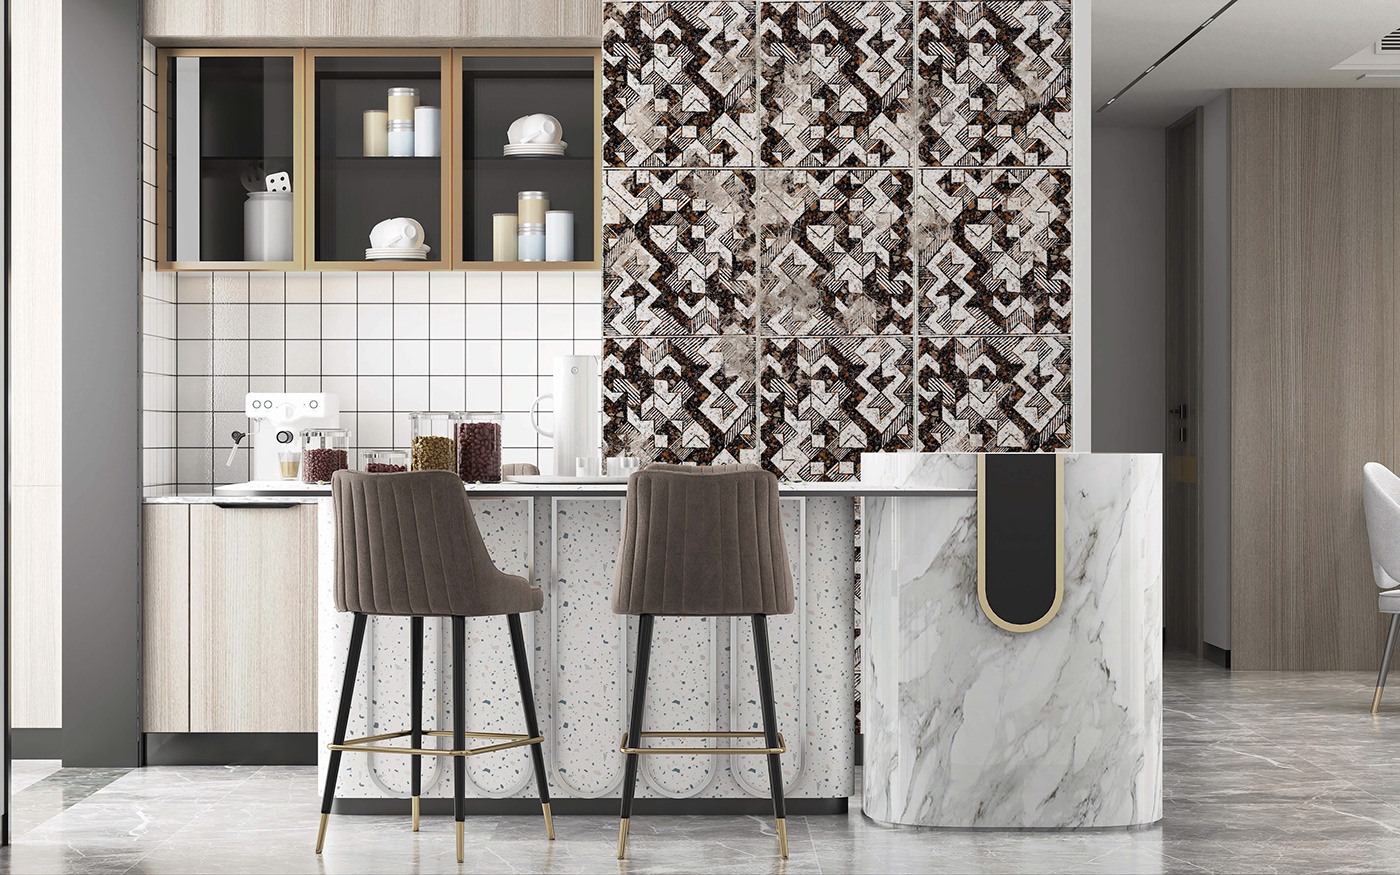 Tile Design tiles ceramics  ceramic kitchen design design art artwork kitchen tiles kitchen tiles design